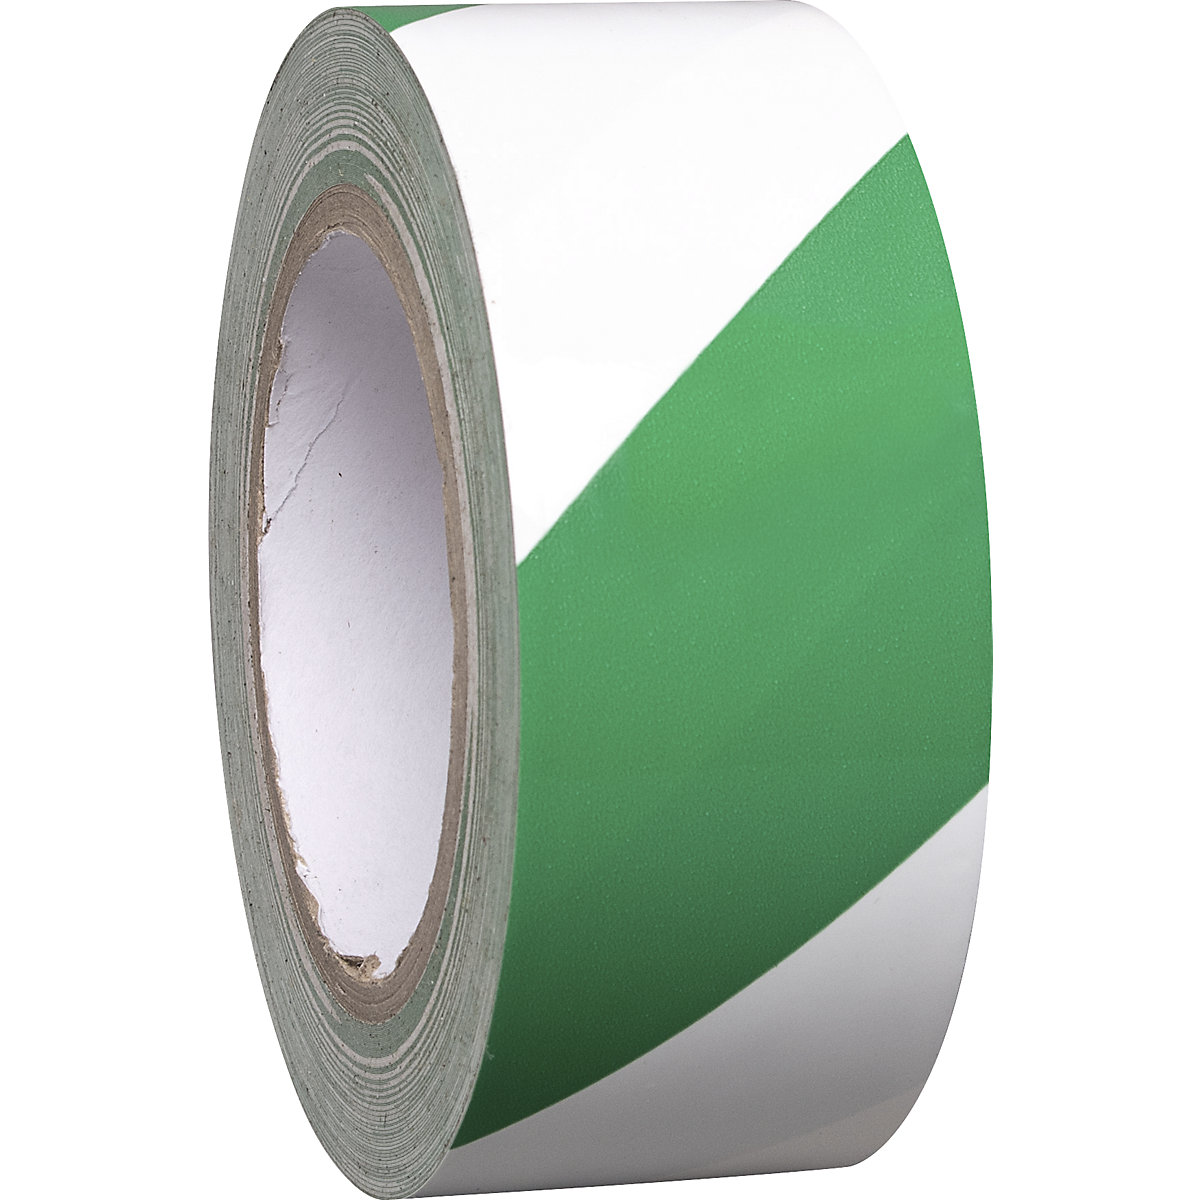 Cinta de vinilo bicolor para marcar suelos, anchura 50 mm, verde / blanco, UE 8 rollos-3